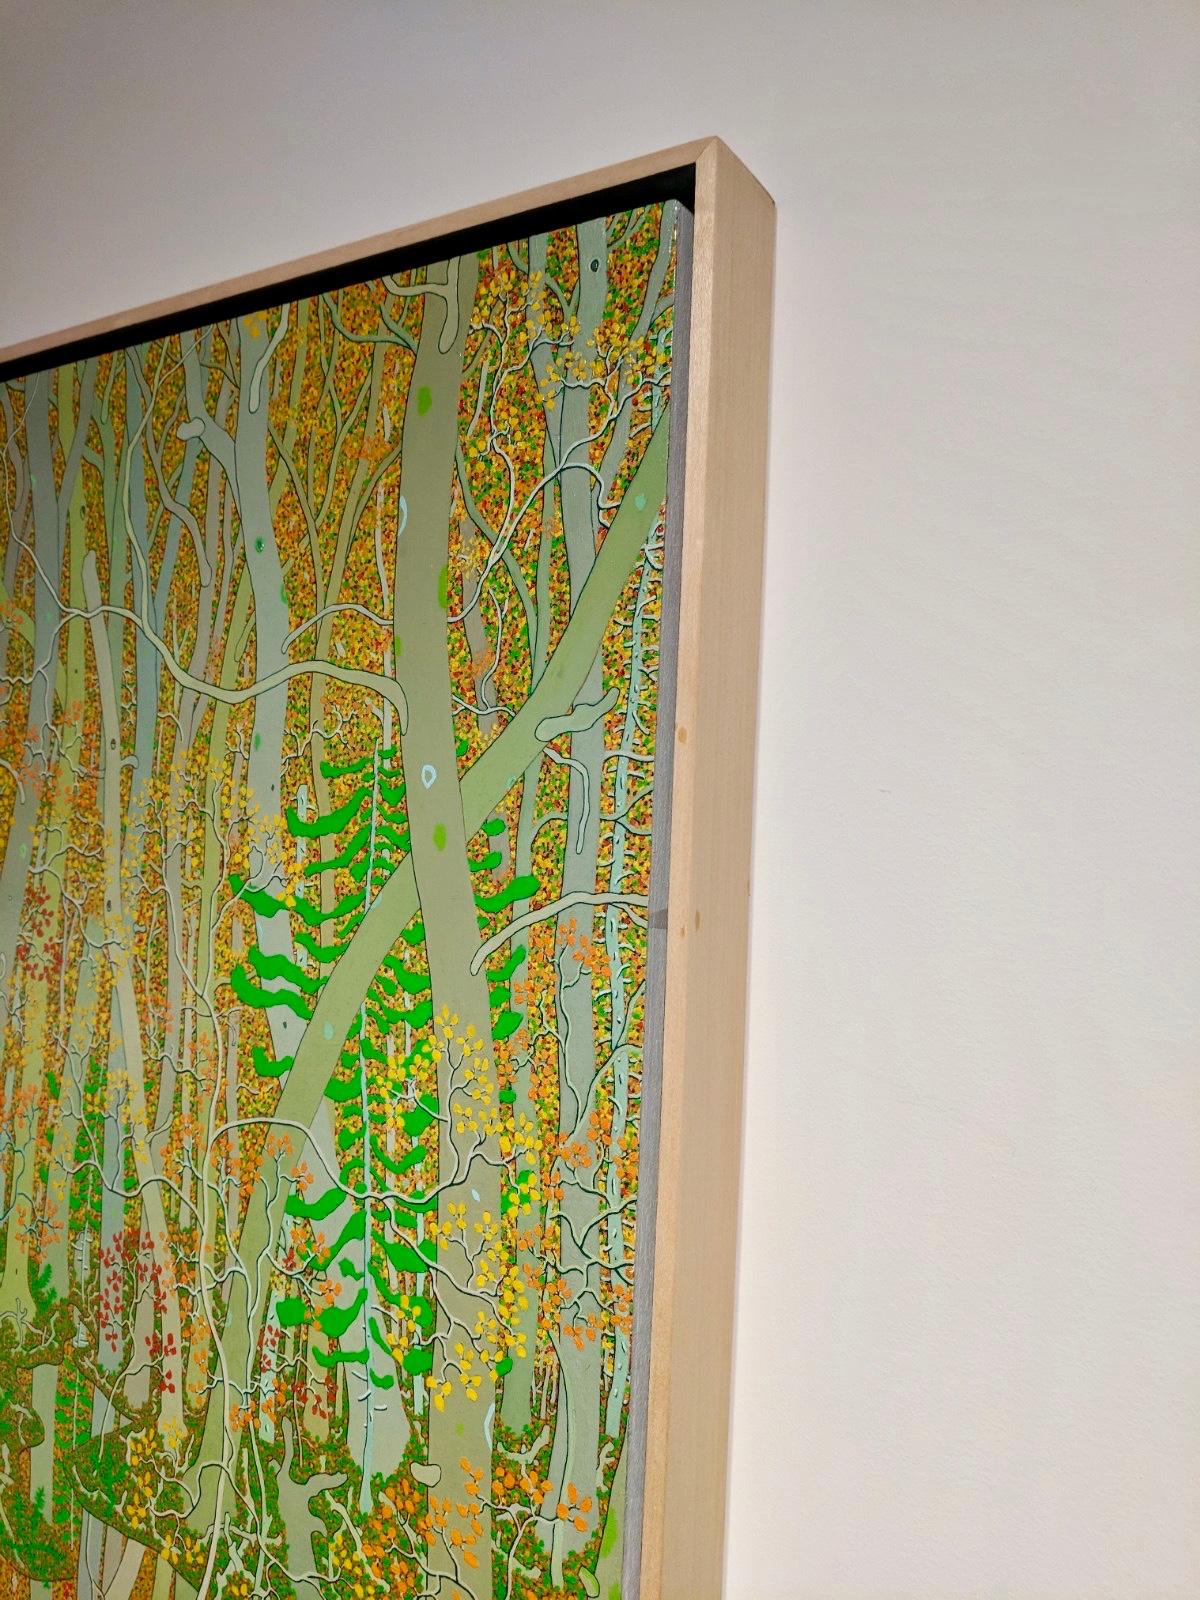 La forêt densément arborée de la maison de Virginie de Hennen est le sujet de cette peinture de paysage riche et très détaillée. Ses nombreuses nuances de vert, d'orange, de jaune des feuilles d'automne et de gris doux des troncs d'arbres évoquent